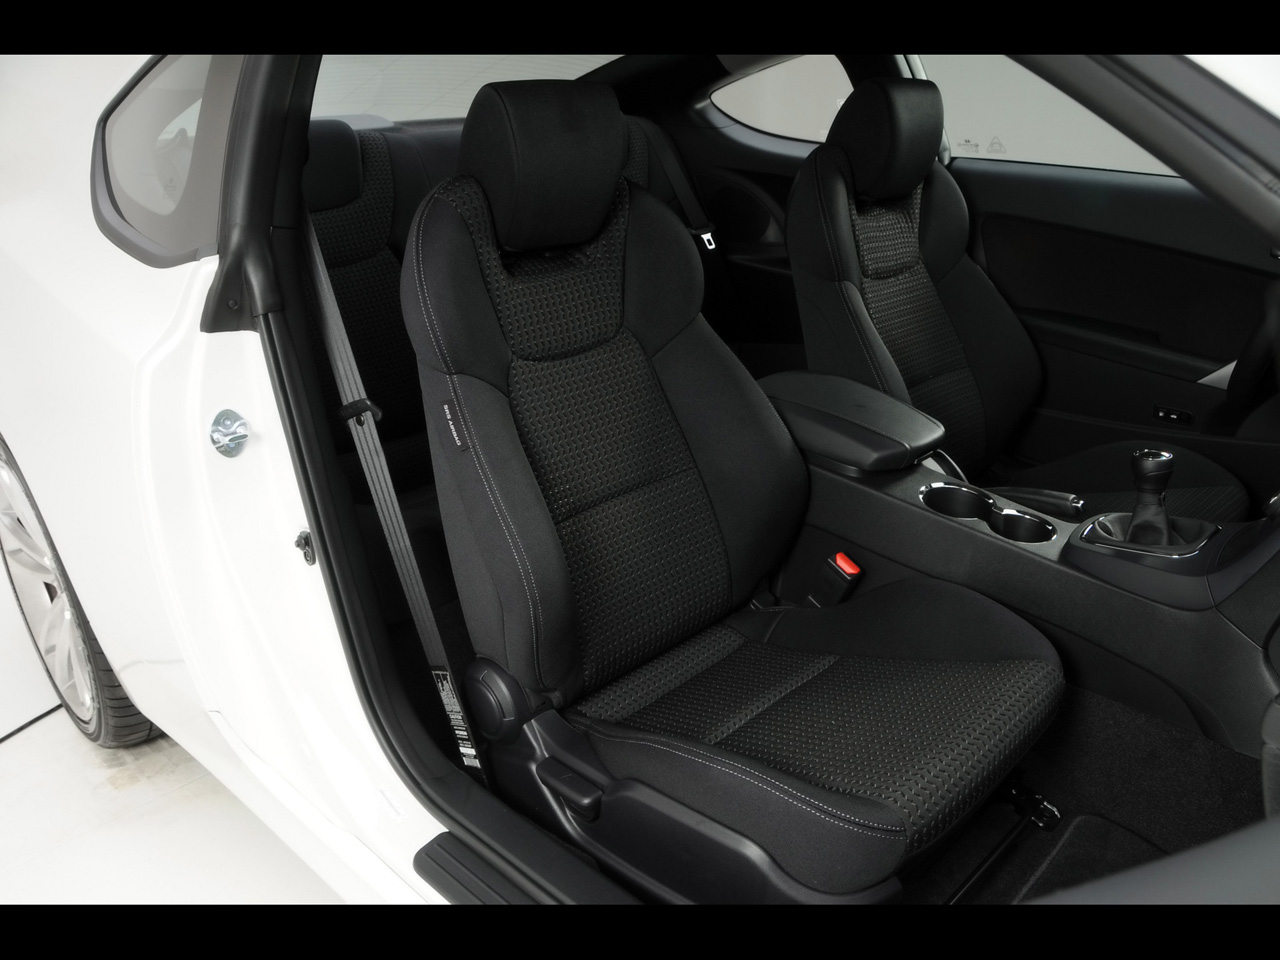 2010-Hyundai-Genesis-Coupe-R-Spec-Seat-1280x960.jpg